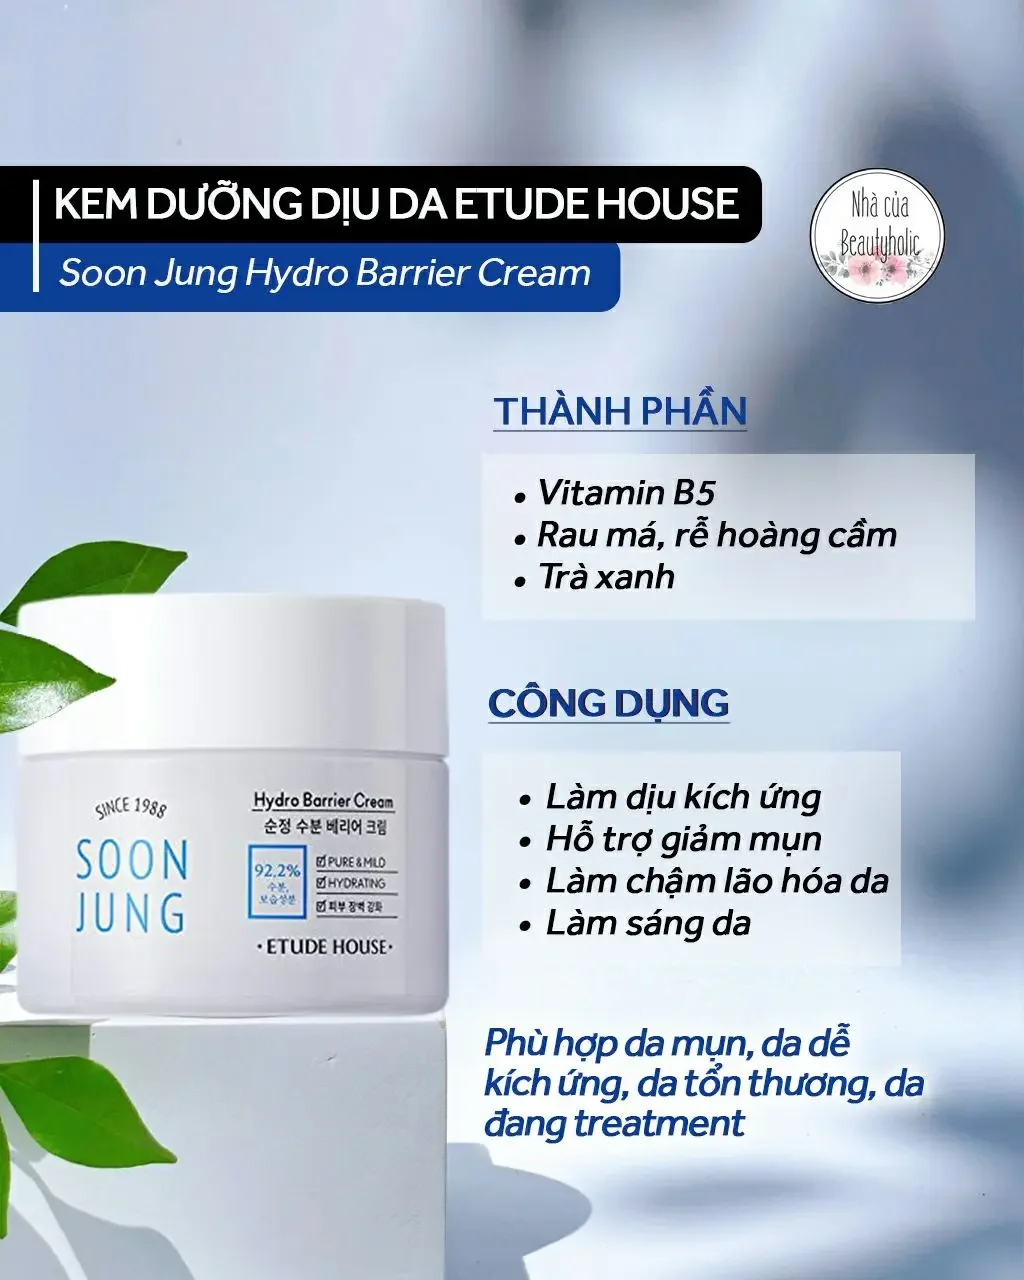 [Nhacuabeautyholic] Kem dưỡng Etude House Soon Jung Hydro Barrier Cream